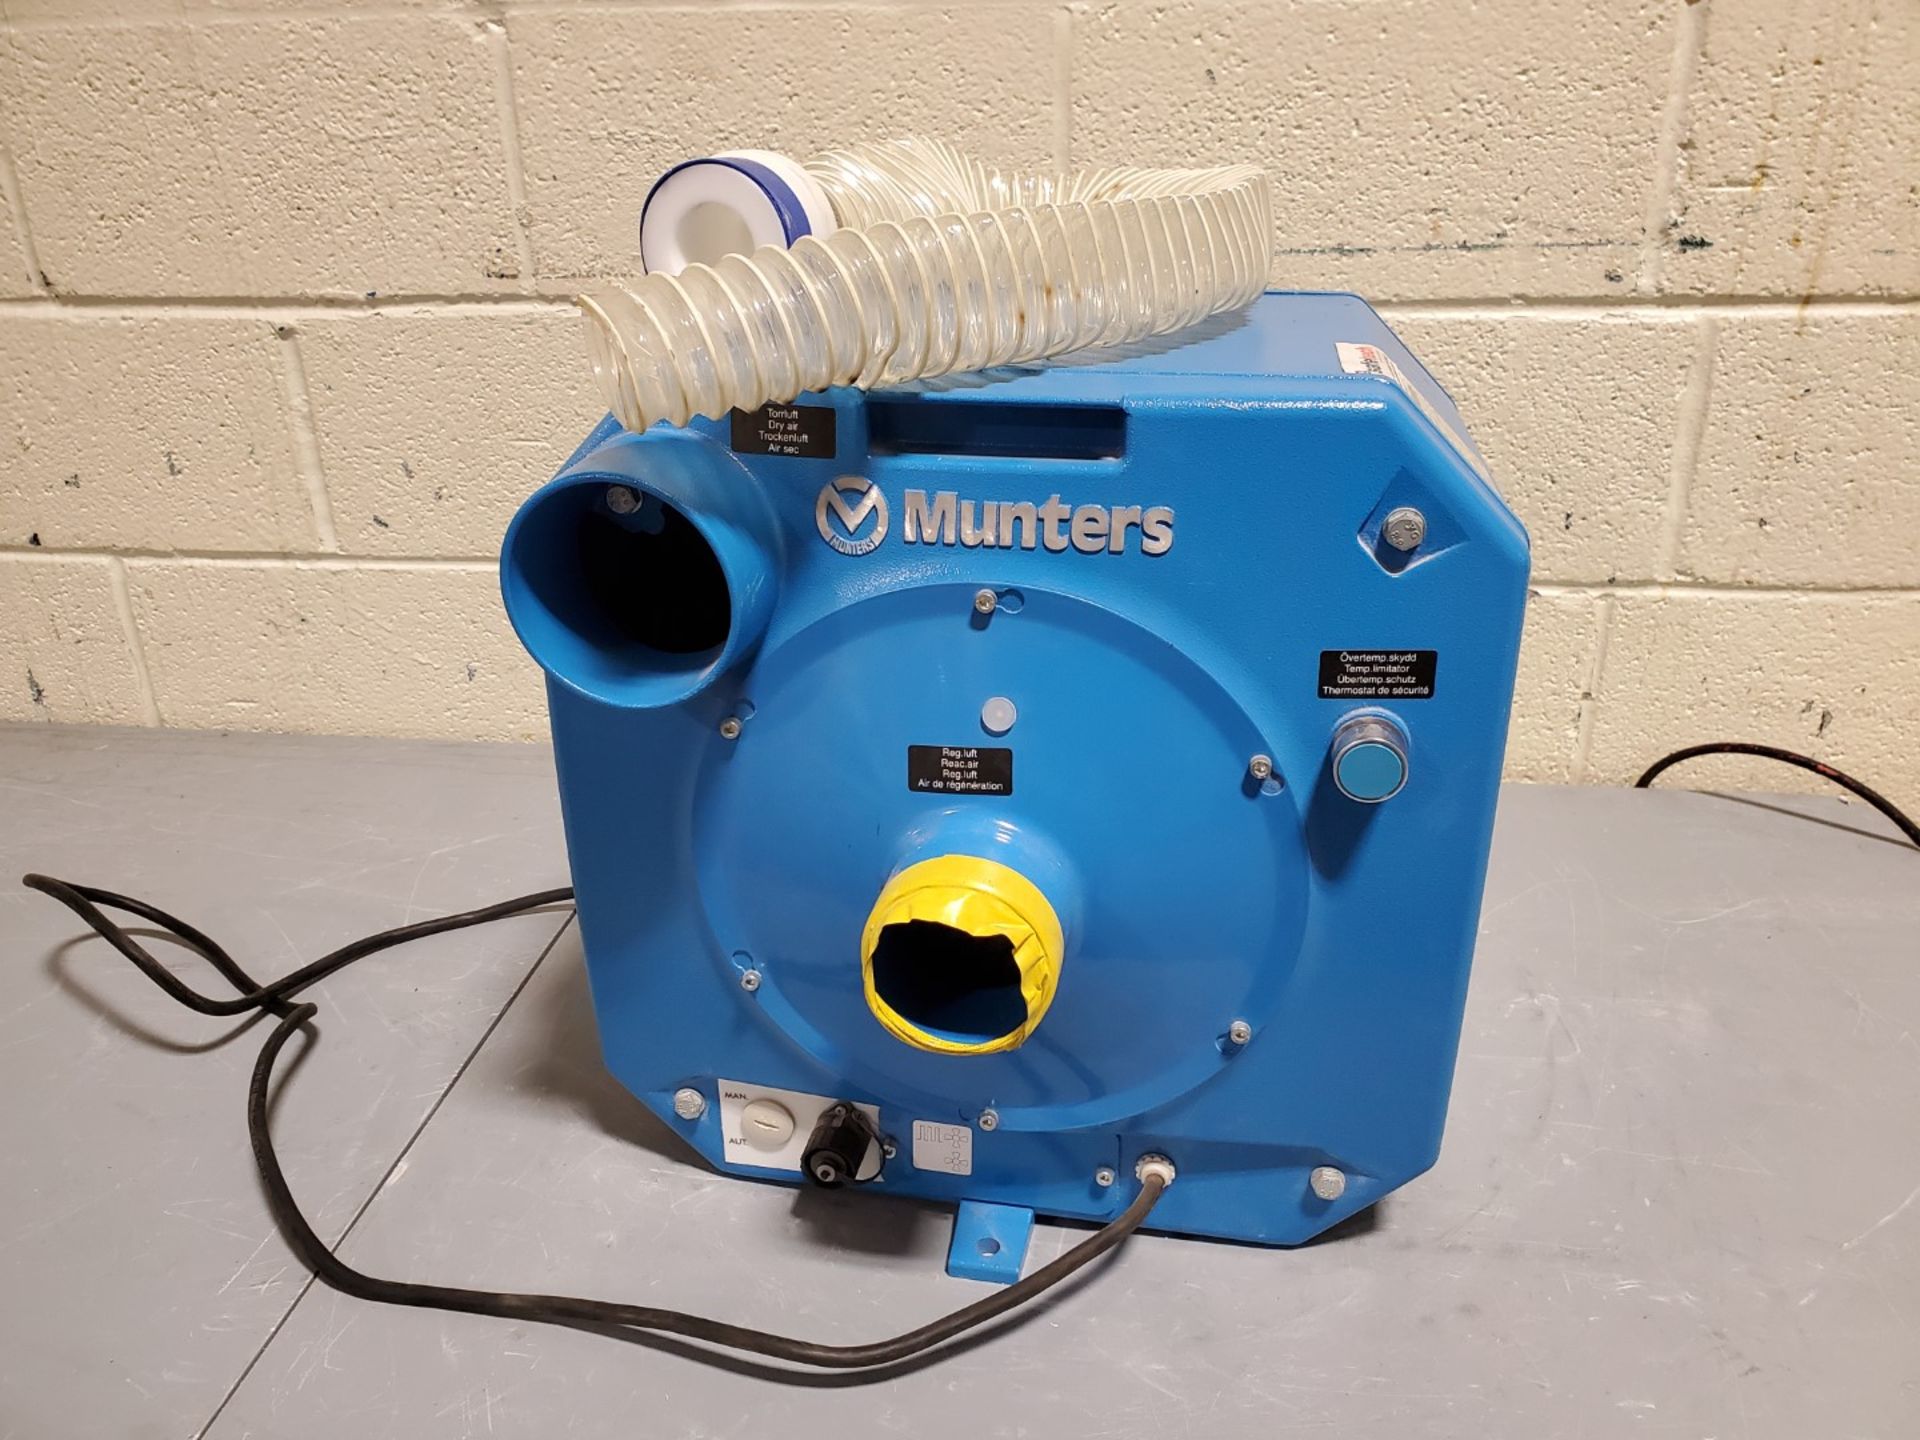 Munters Small Dessicant Dehumidifier, Model M120